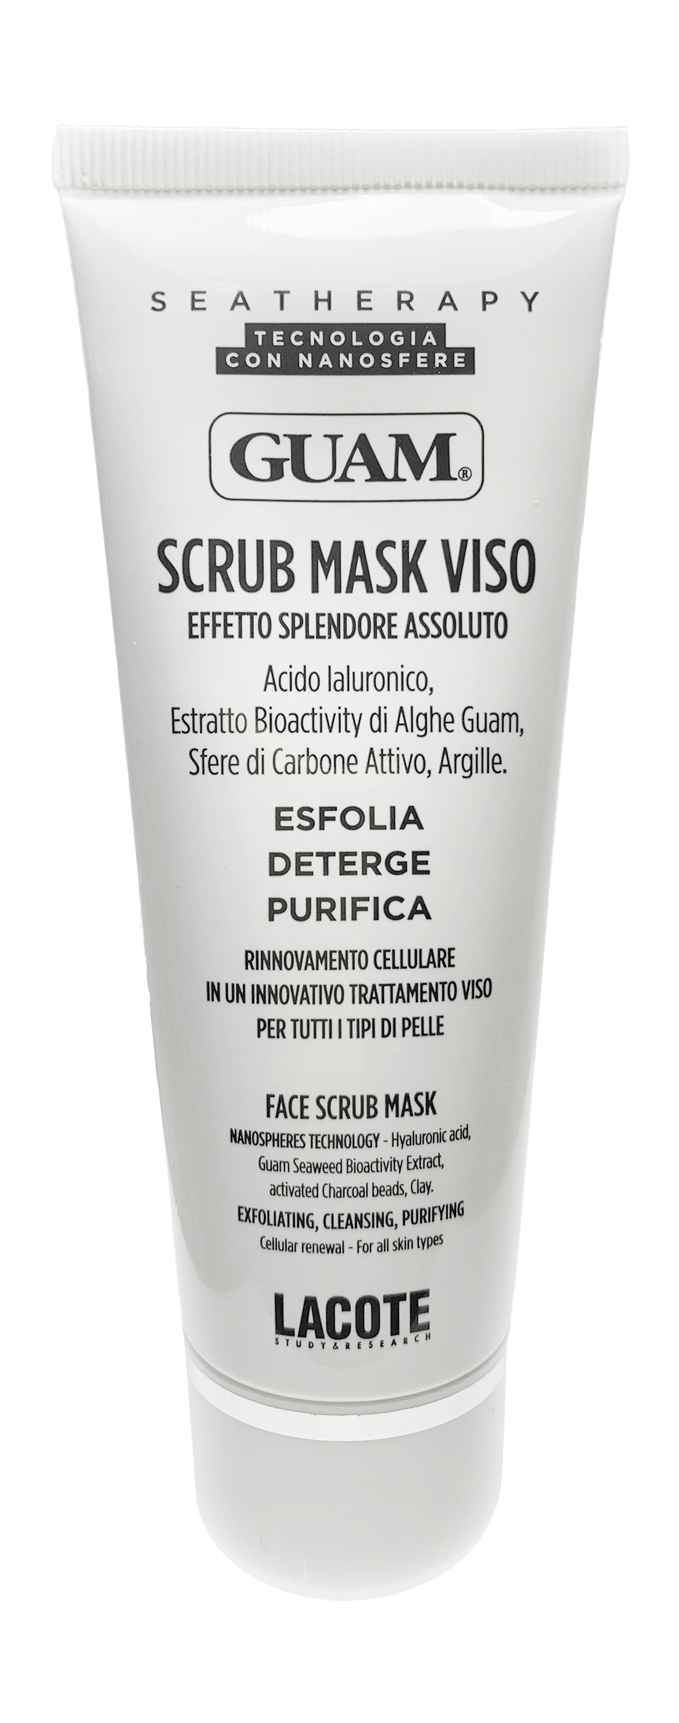 Скраб для лица GUAM Seatherapy Scrub Mask Viso Tubo скраб для лица guam seatherapy scrub mask viso tubo